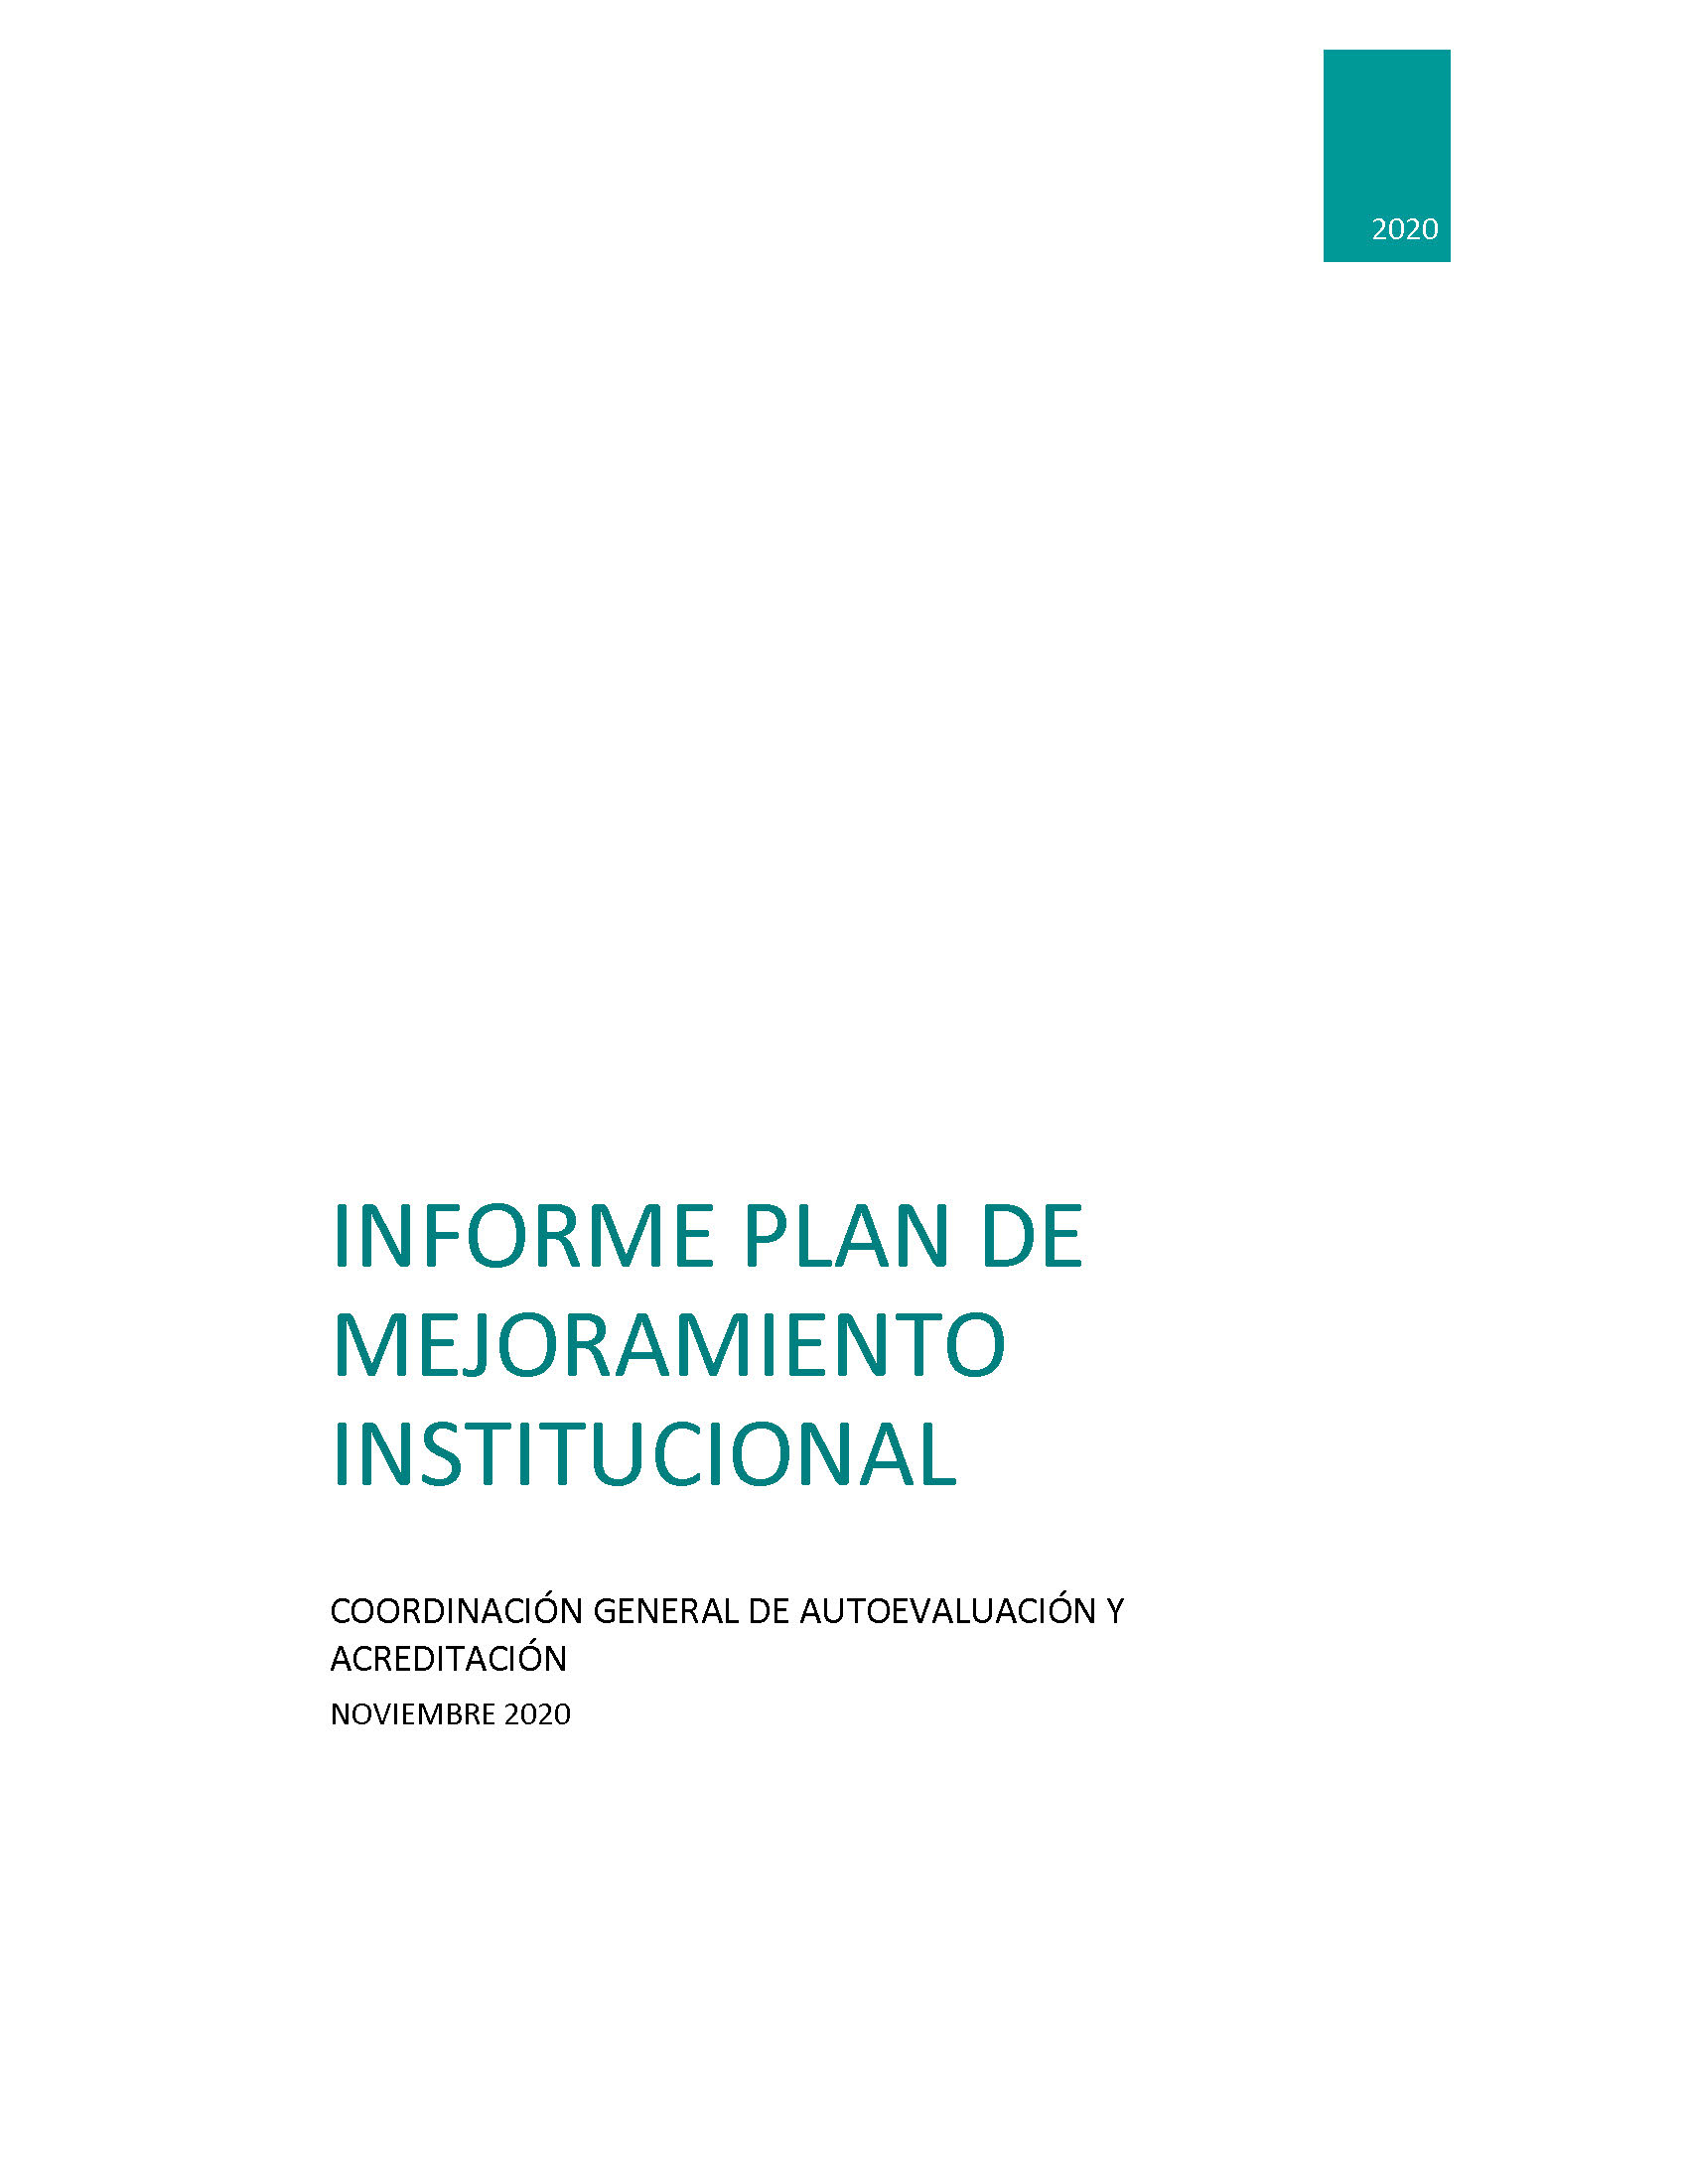 Imagen portada del Informe Plan de Mejoramiento Institucional 2020